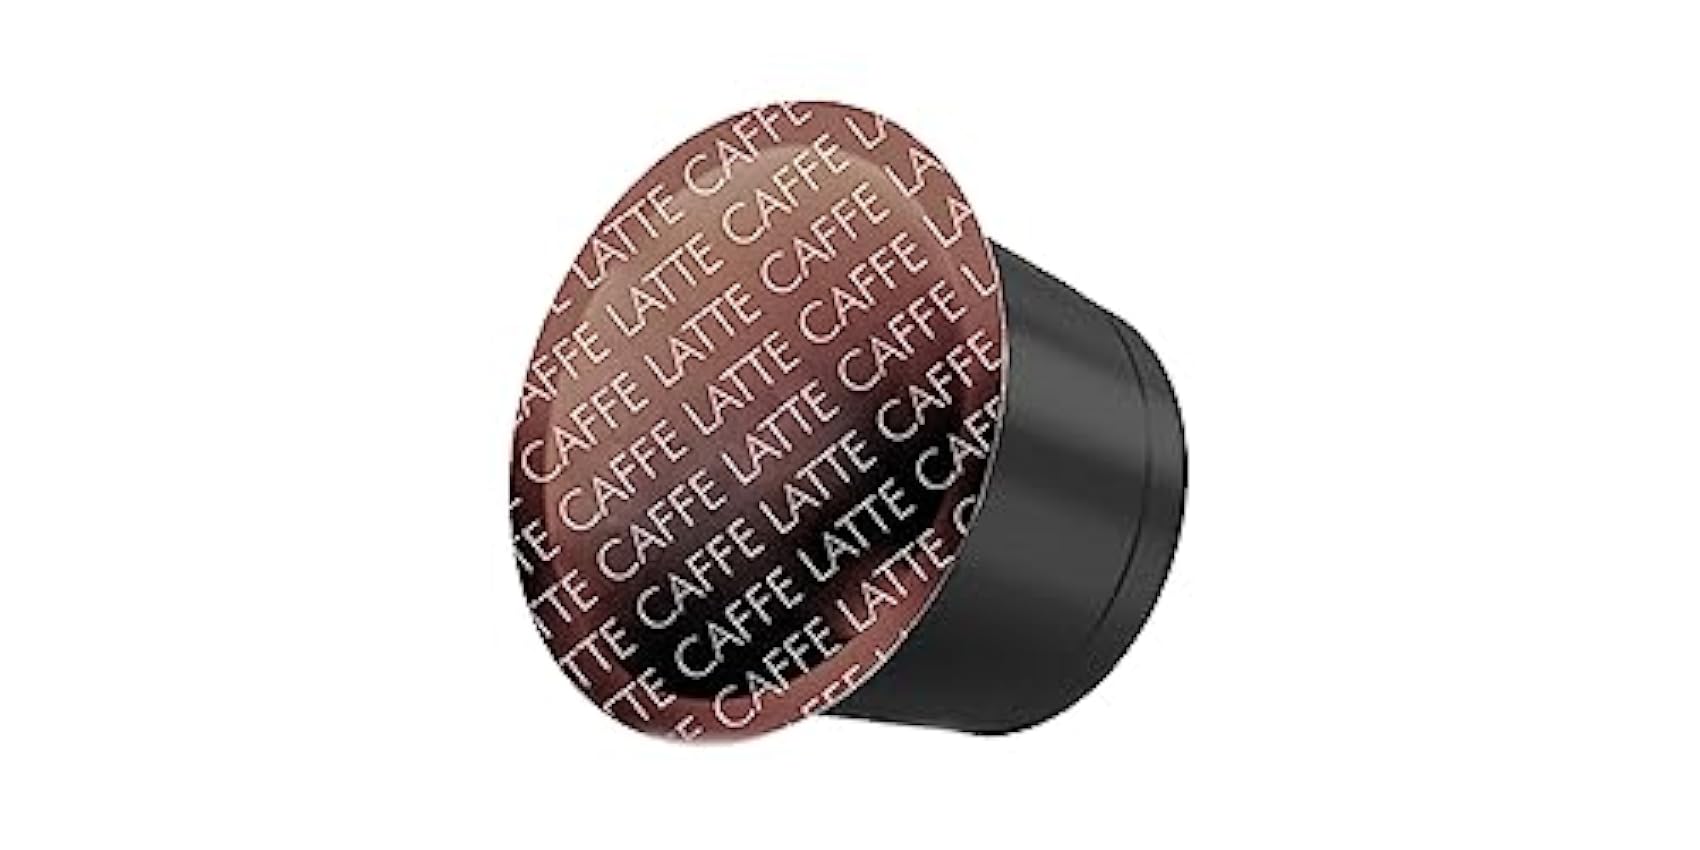 ABBANTIA Capsules de café Latte Compatibles - 128 Capsules (Pack de 8 boîtes x 16) Nk3wFrXj